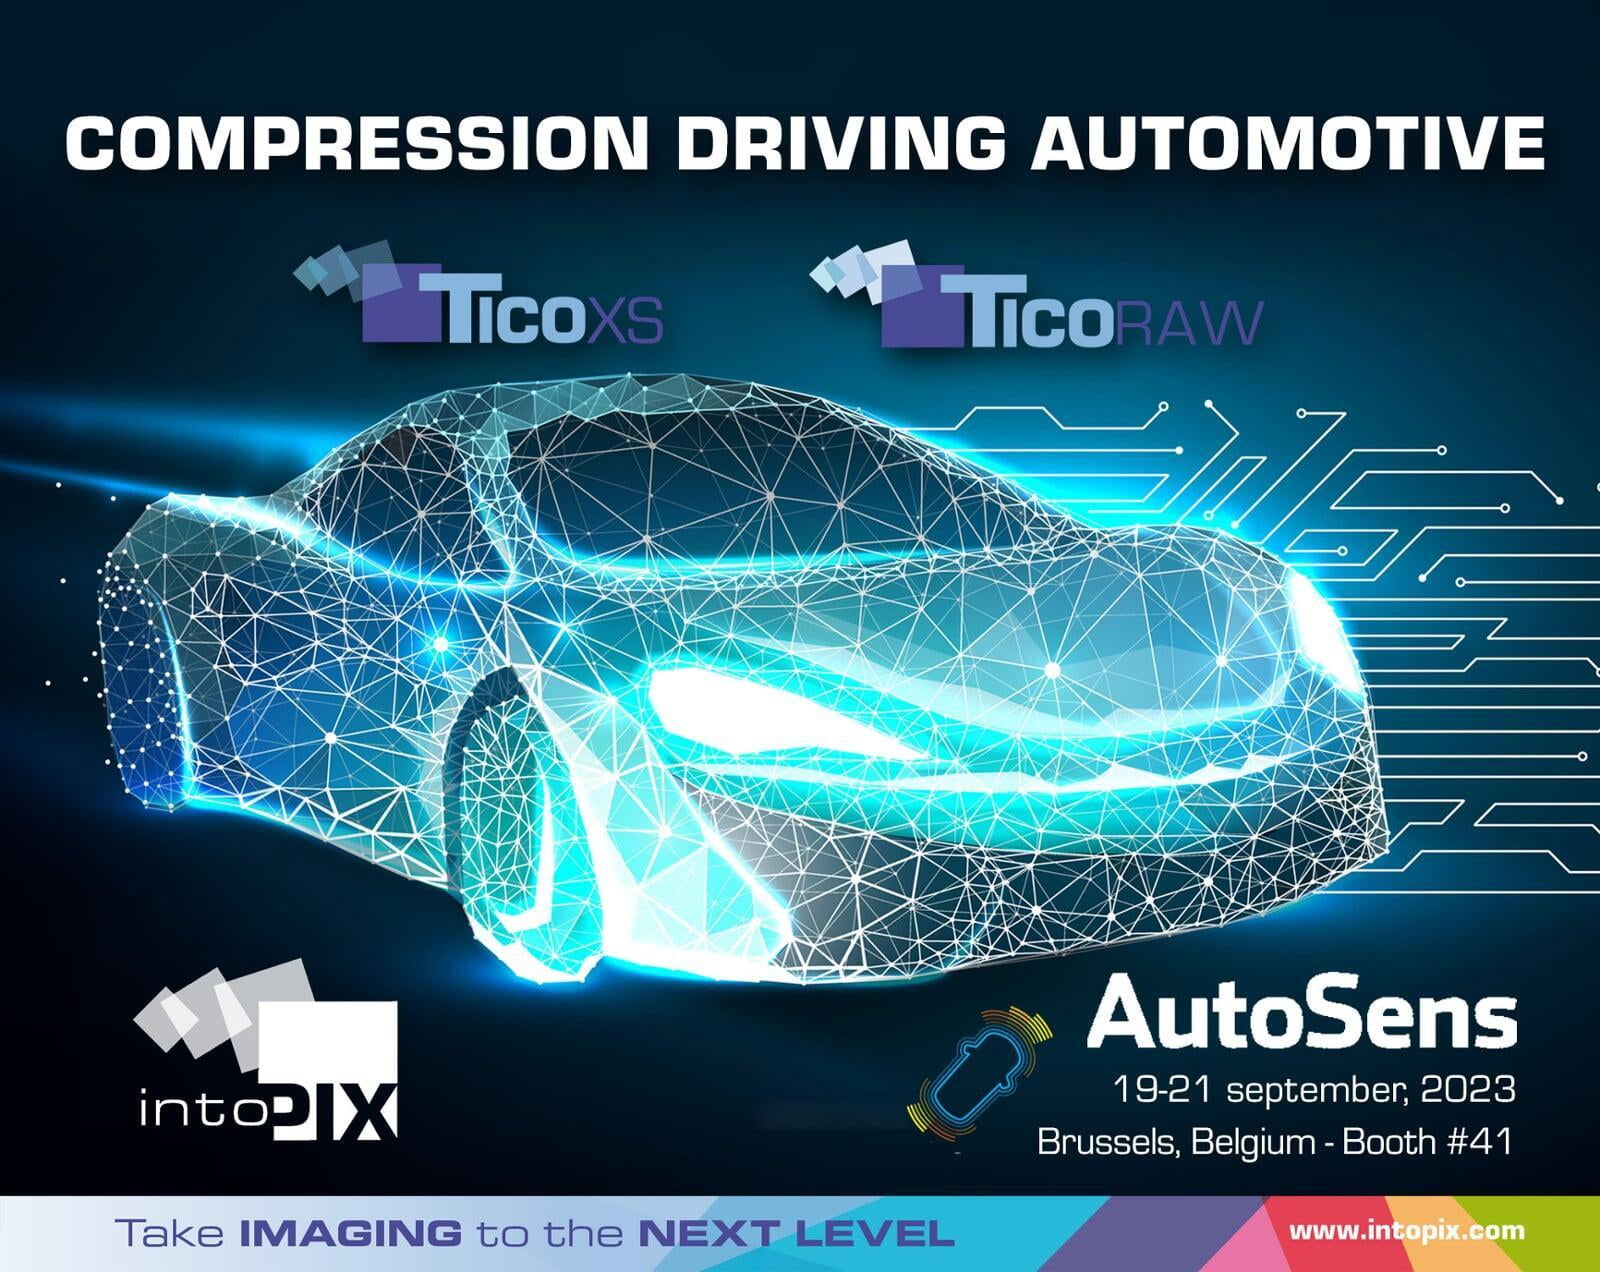 intoPIX 在 AutoSens 2023 上展示推動汽車創新的全新羽量級視頻壓縮標準和技術